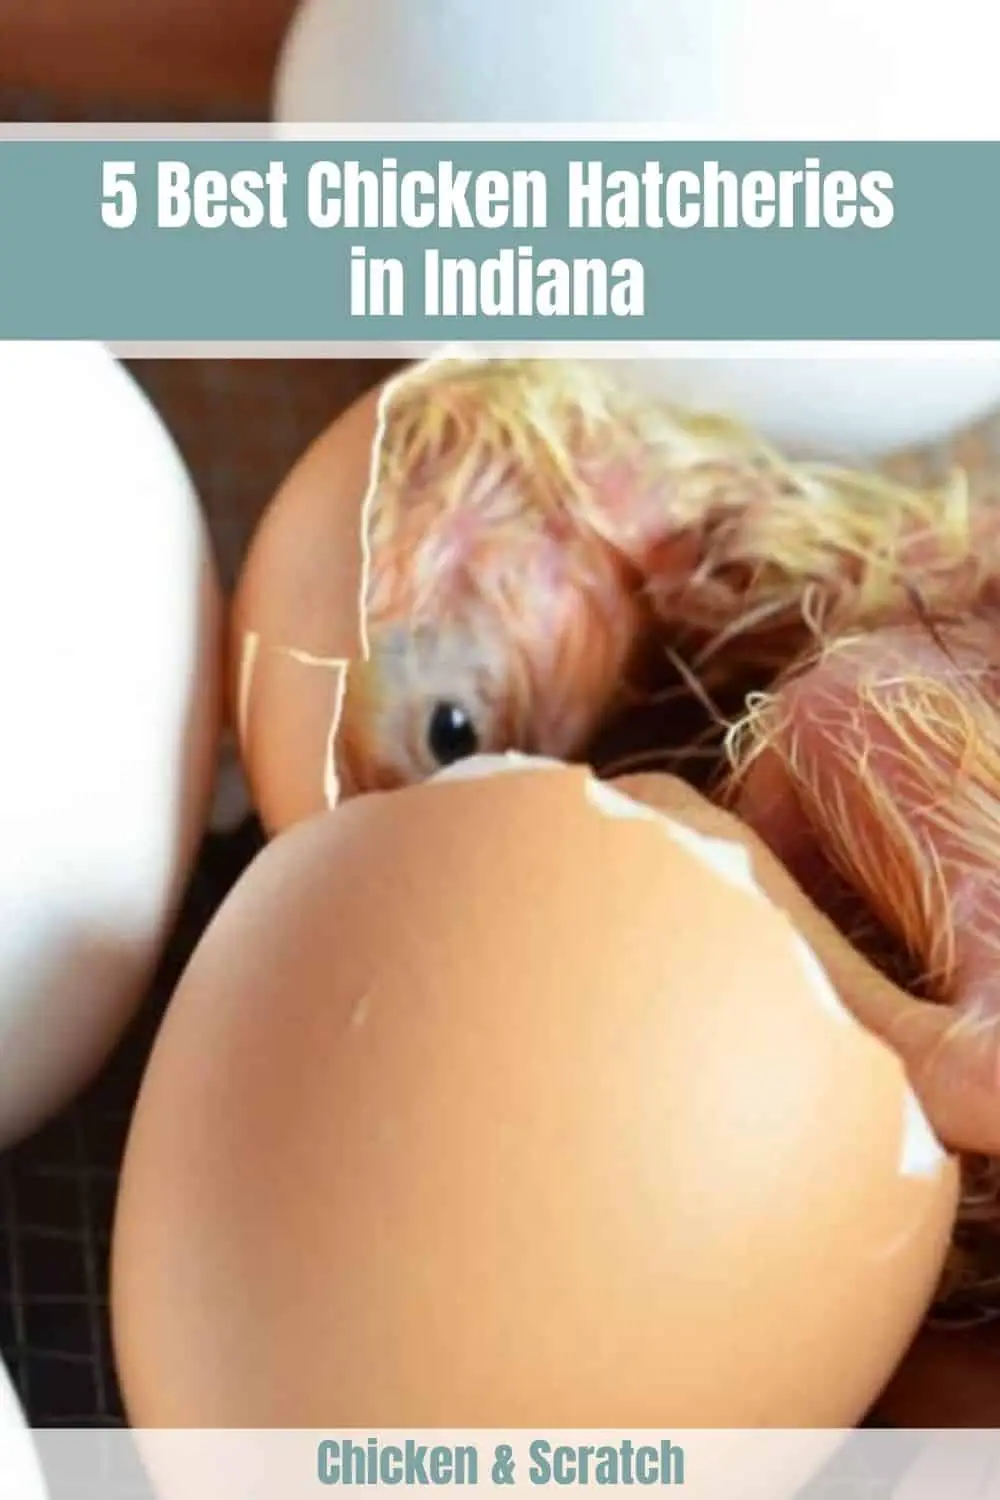 Venta de pollo en Indiana